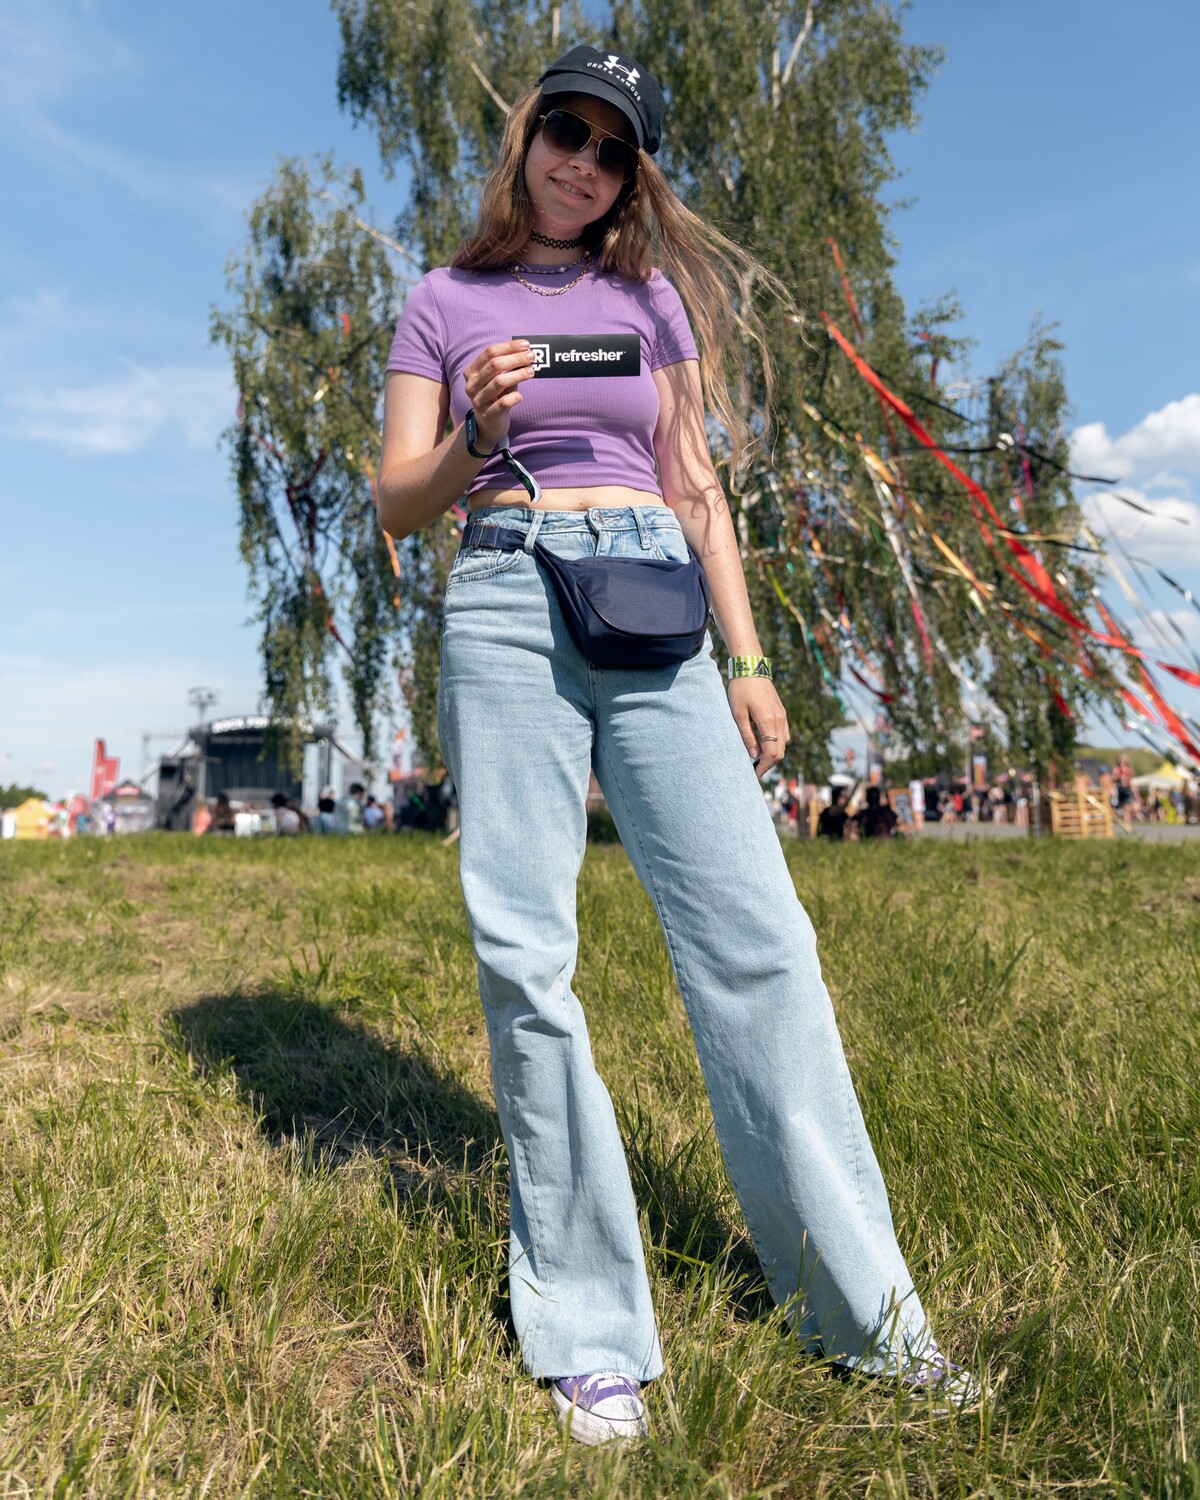 móda z festivalu